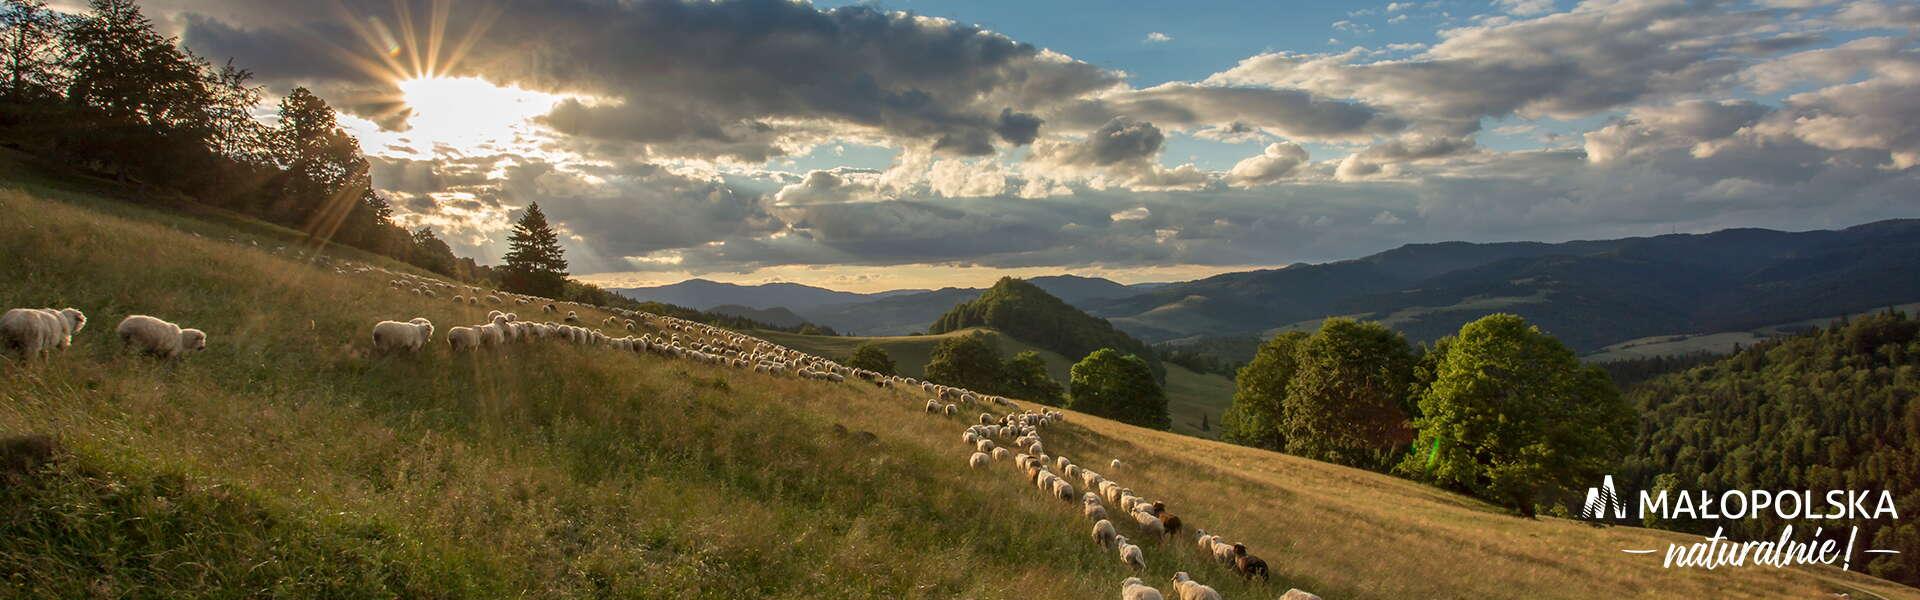 Zbocze góry na którym pasa się owce. W tle zachodzące słońce.